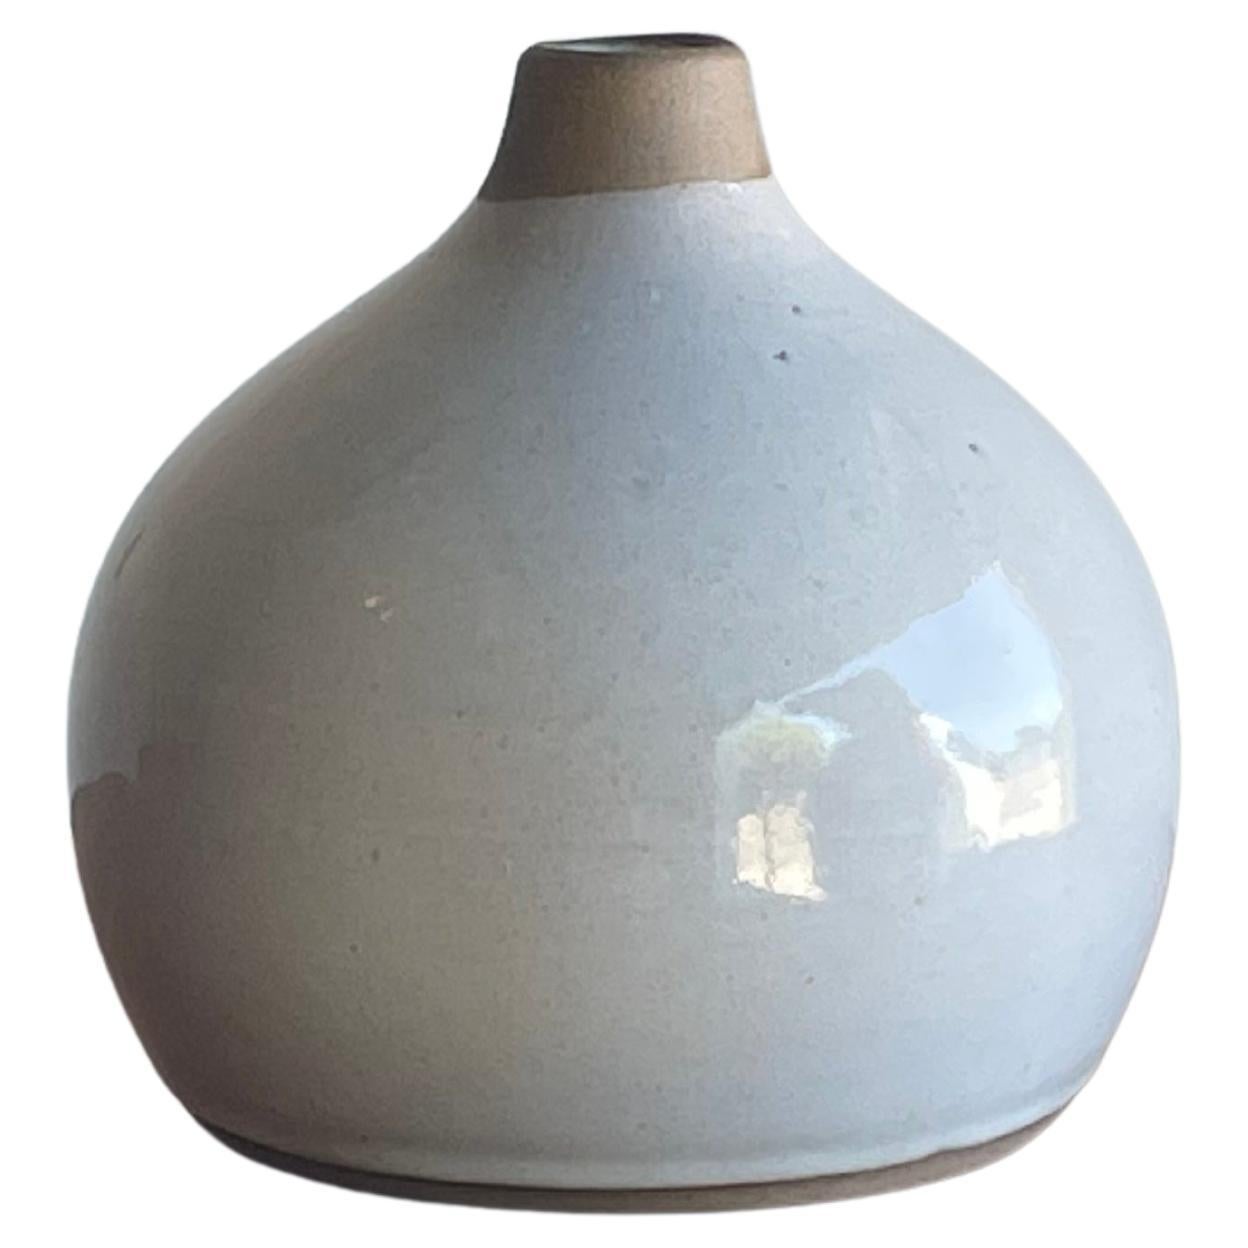 Jane and Gordon Martz for Marshall Studios Ceramic Vase For Sale